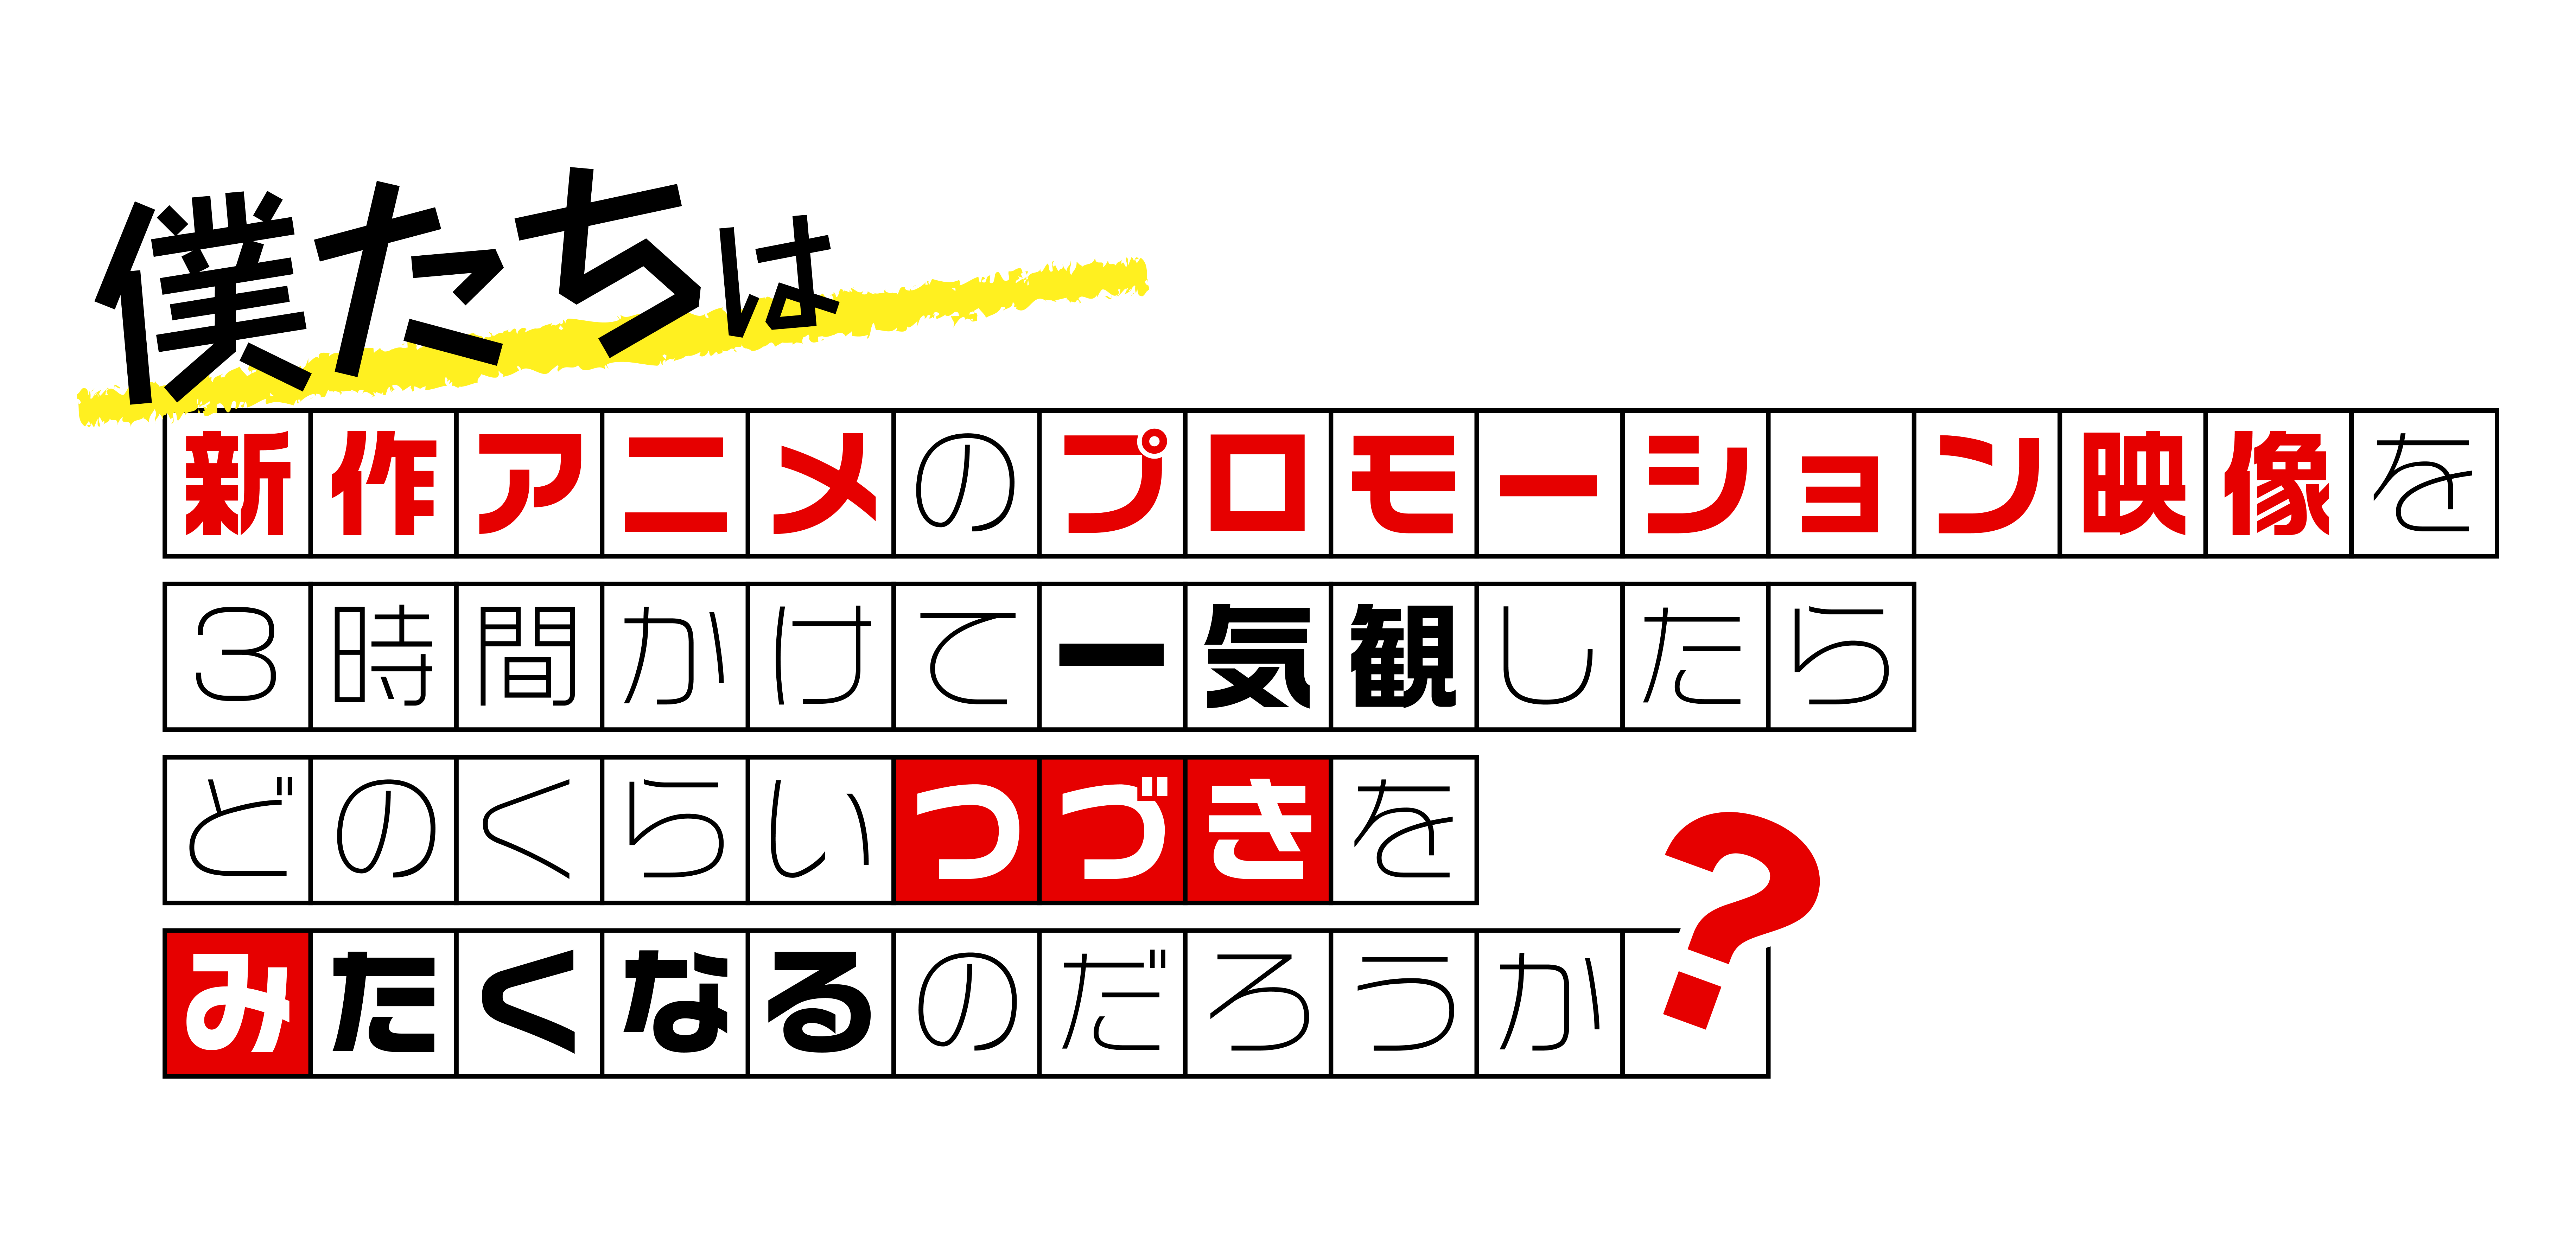 新作アニメPVの一気観番組「つづきみ」第29回が
9/29配信決定！